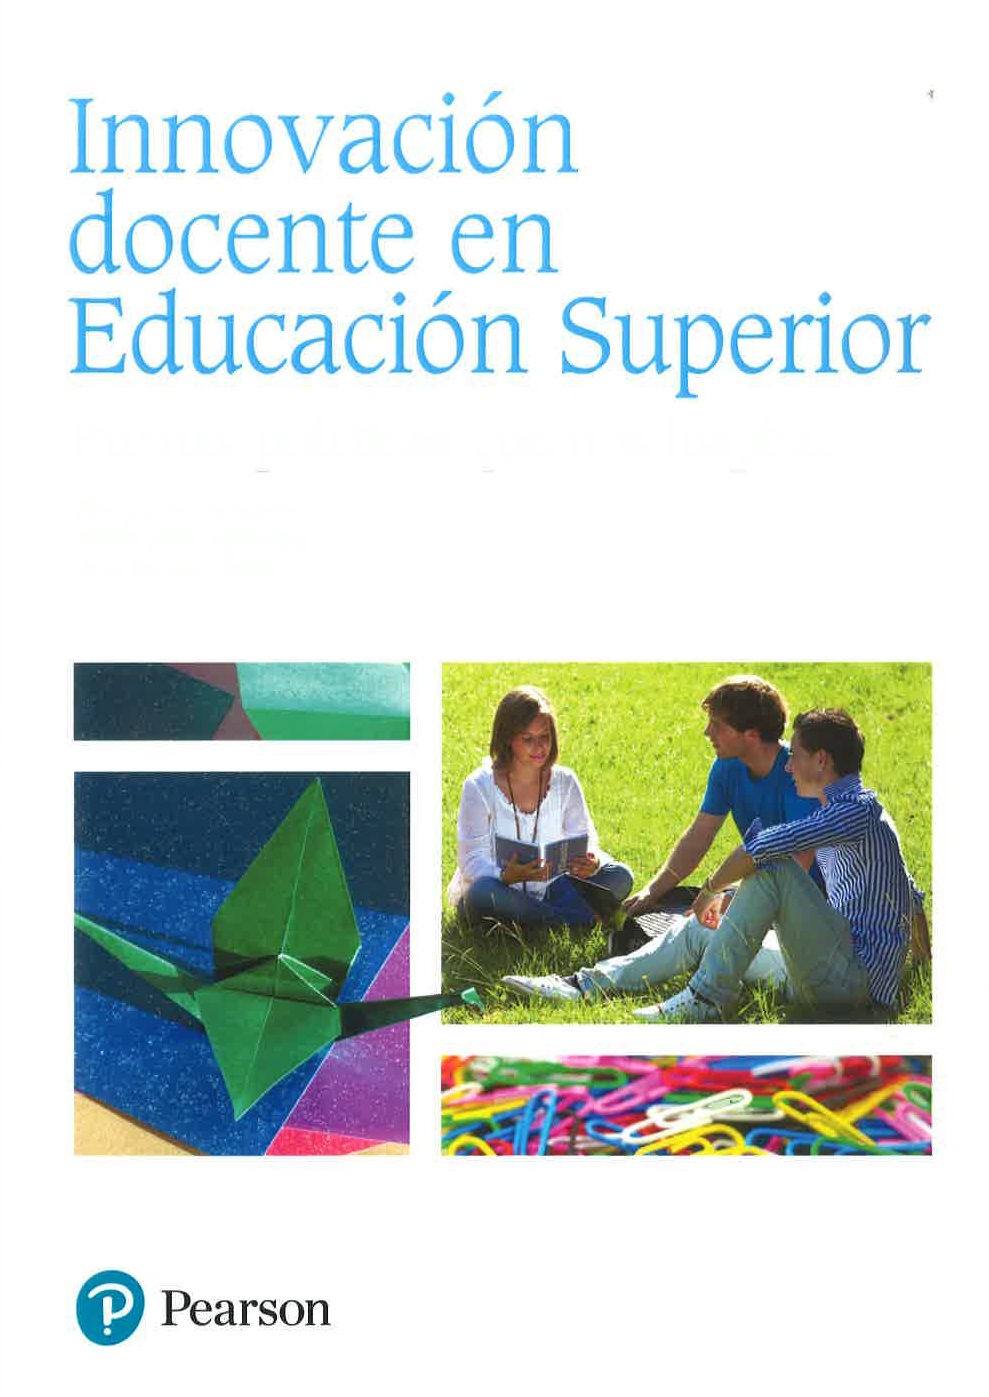 Imagen de portada del libro Innovación docente en educación superior